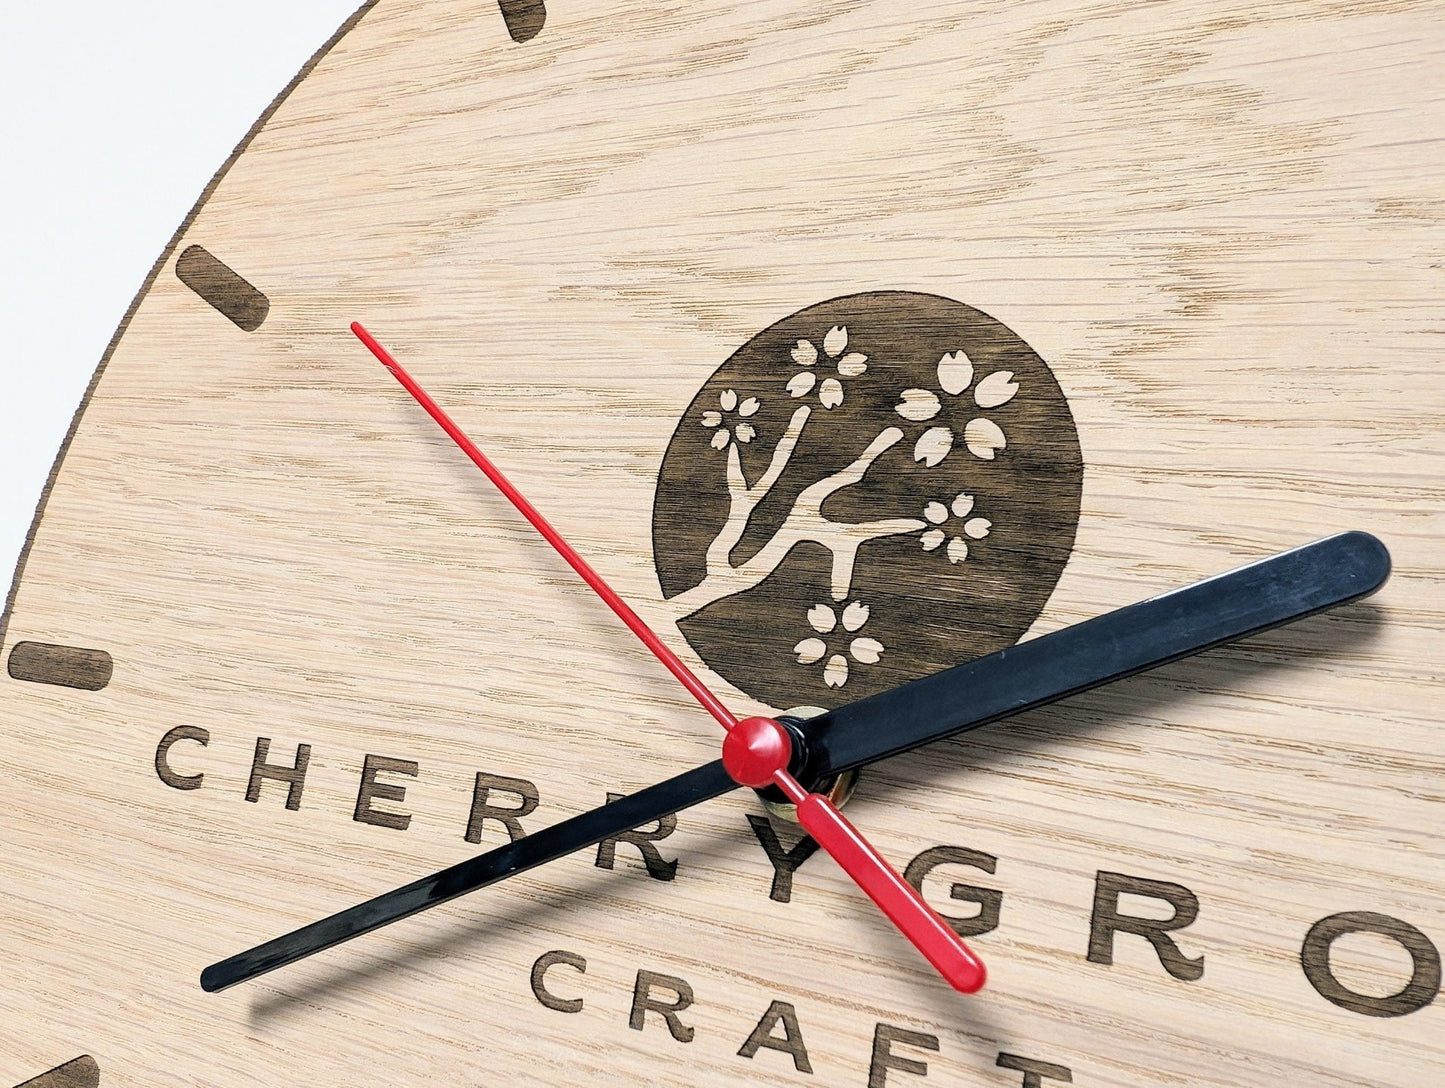 Personalised Wooden Logo Wall Clock - Custom Engraved Branded Timepiece - Eco-Friendly Oak Veneer - Sustainable Packaging - 30cm - CherryGroveCraft